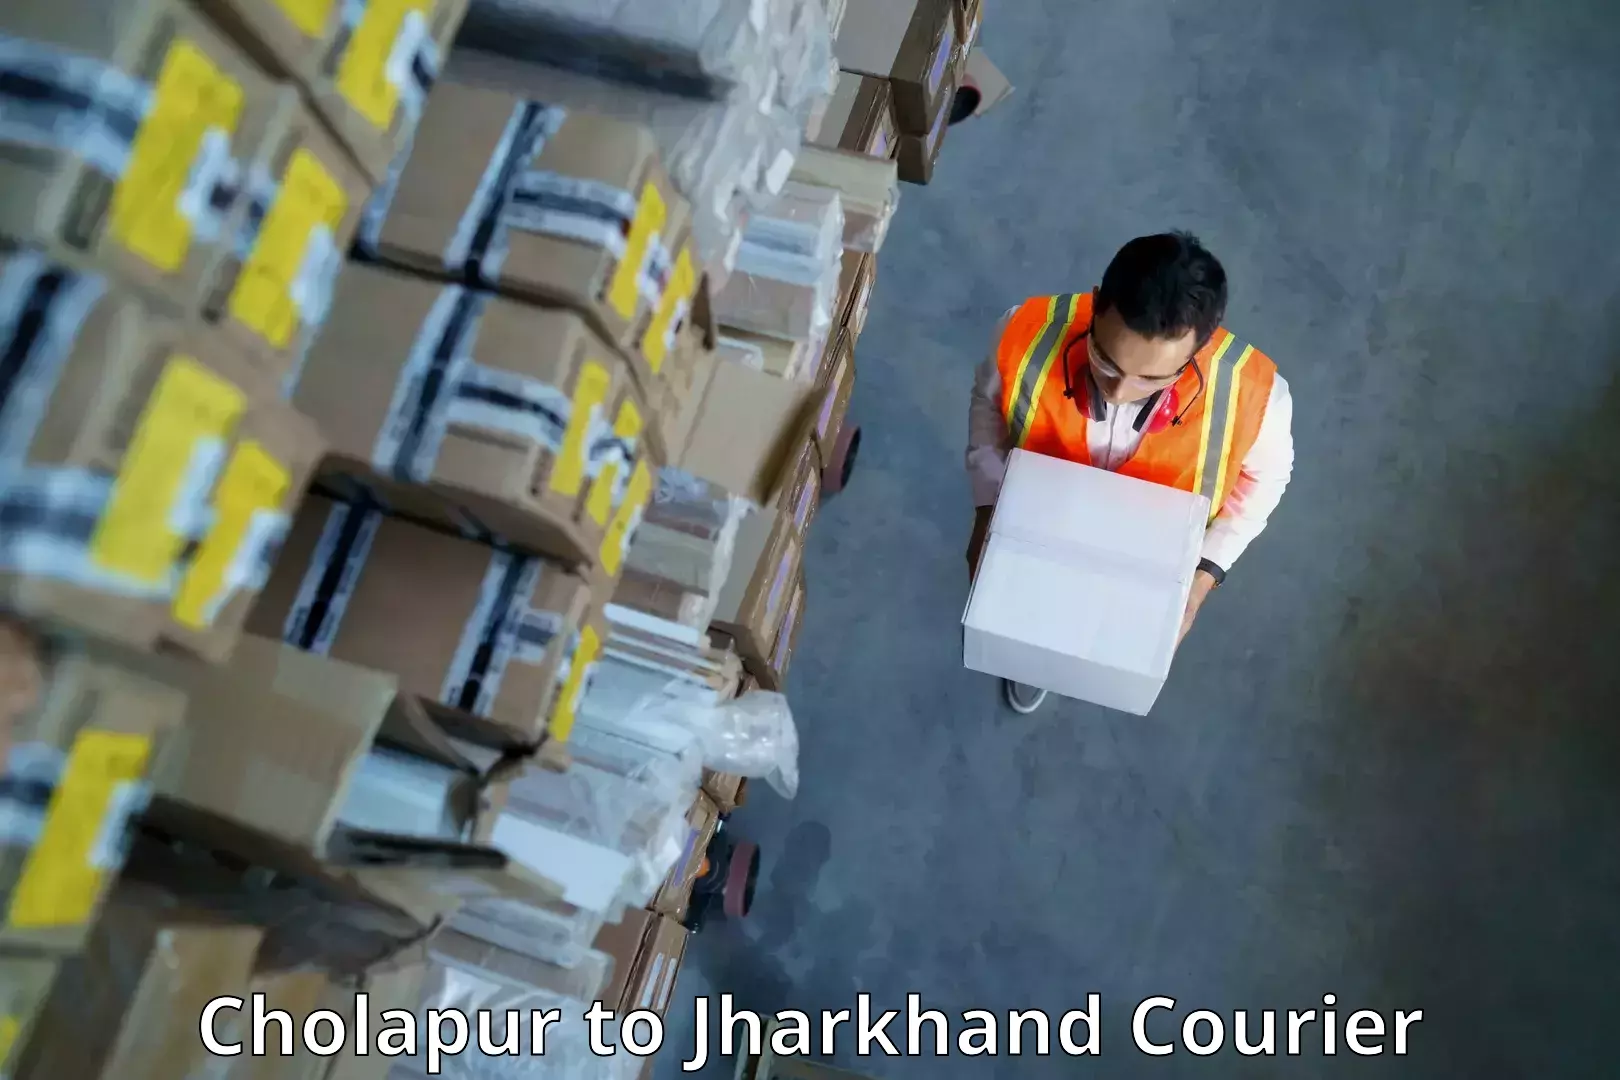 Versatile courier offerings Cholapur to Palojori